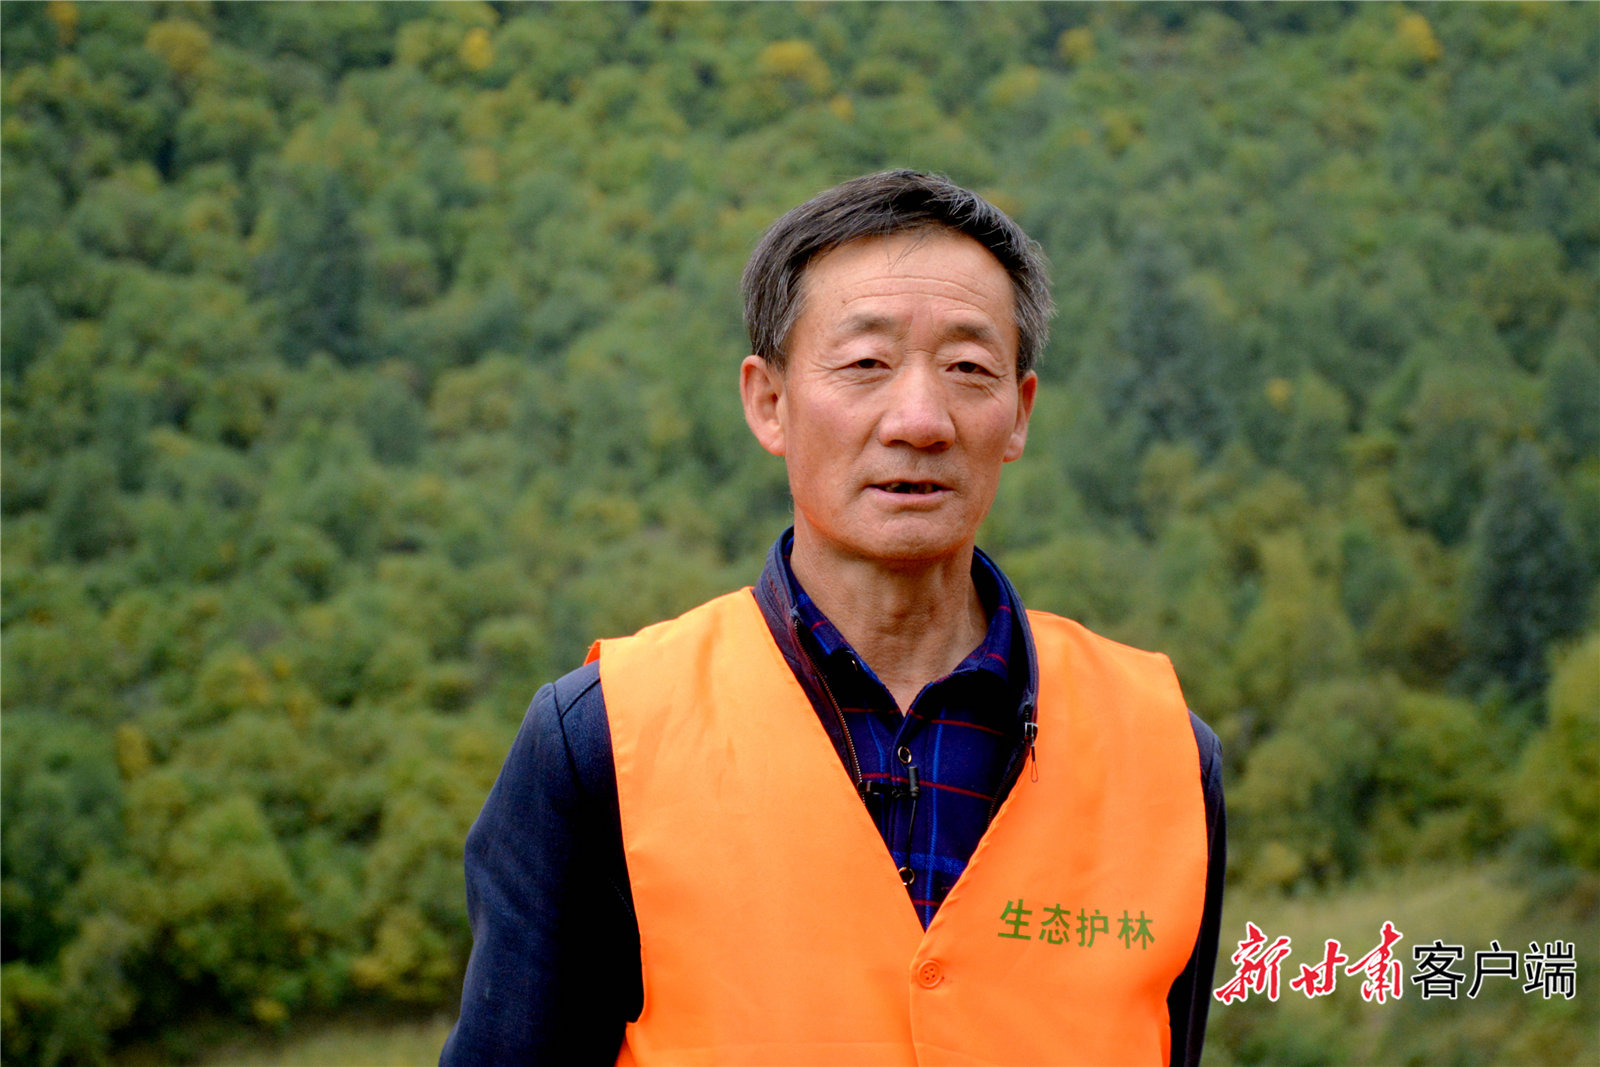 今年60岁的张国良是天祝县炭山岭镇塔窝村村民，作为生态护林员的他每天都到千马龙煤矿原址附近的生态恢复区域巡逻。新甘肃·甘肃日报记者 金奉乾